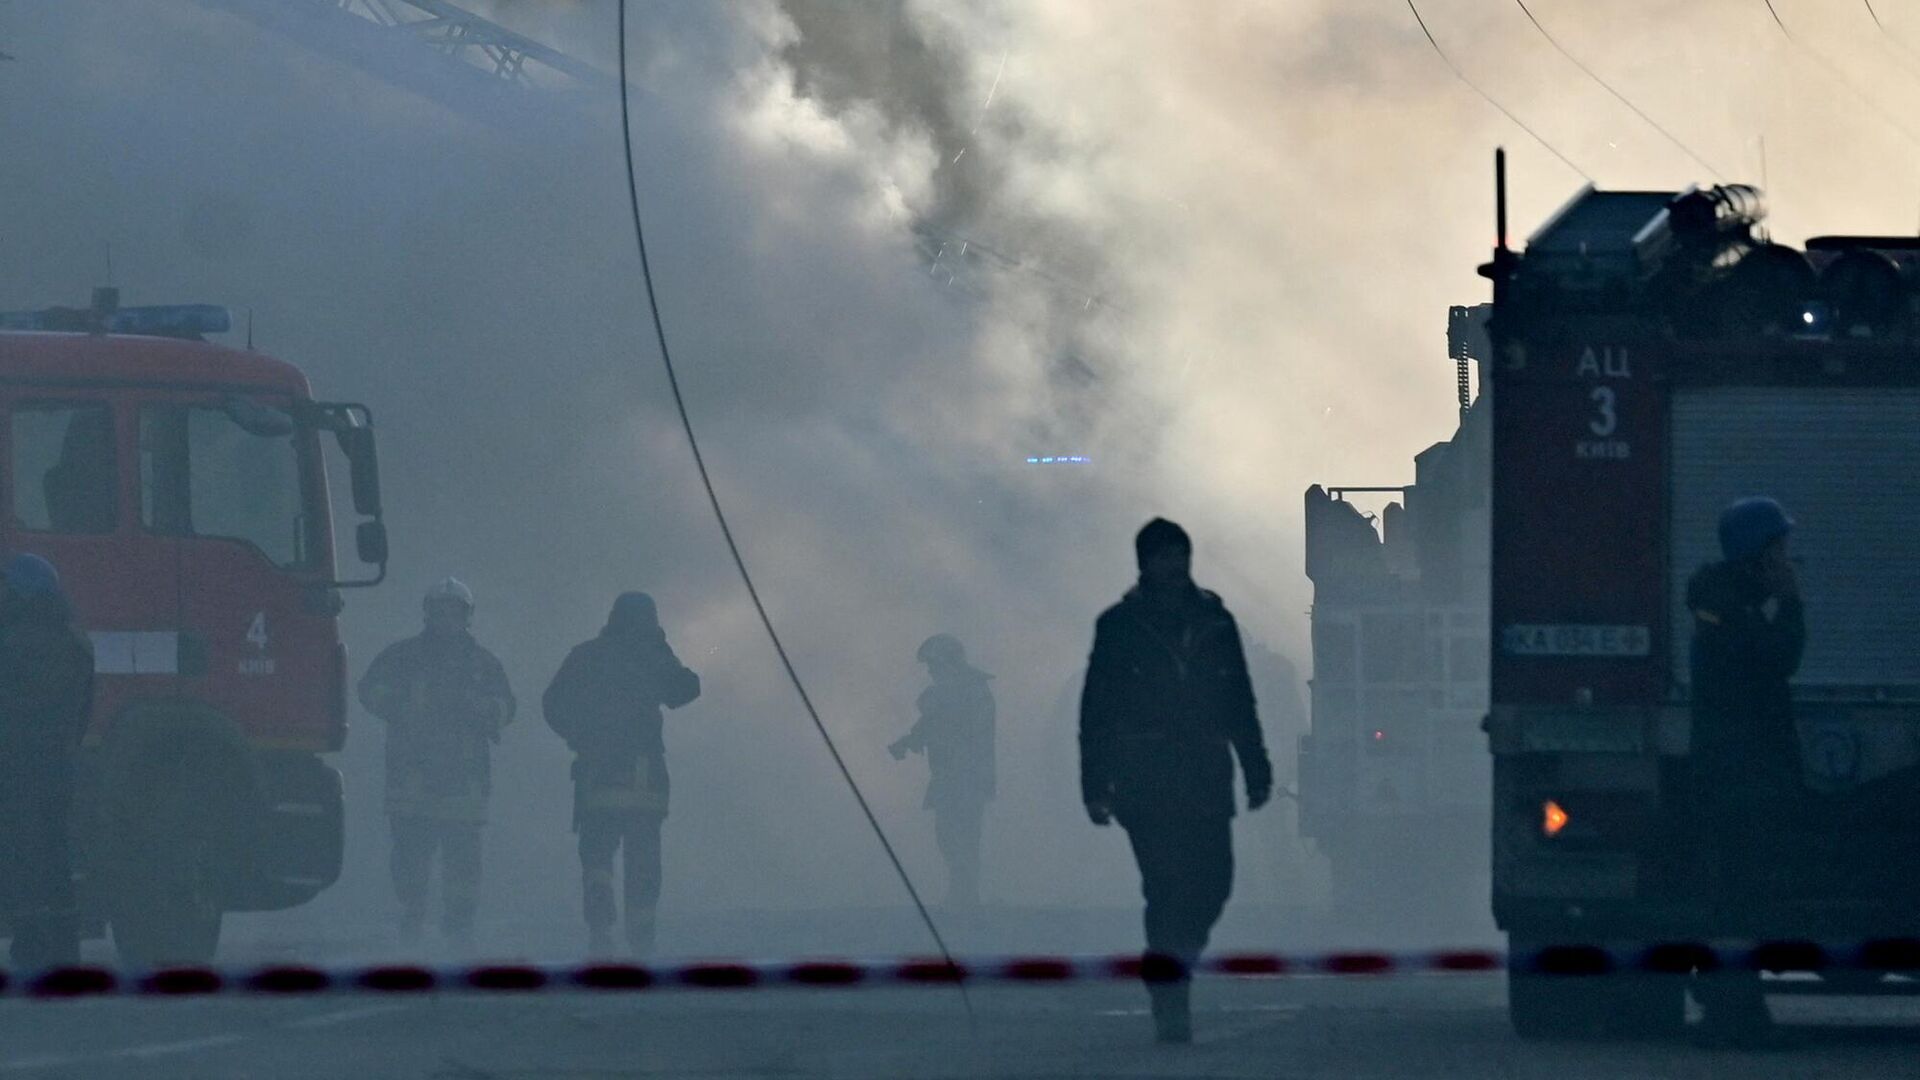 В Харькове произошел взрыв